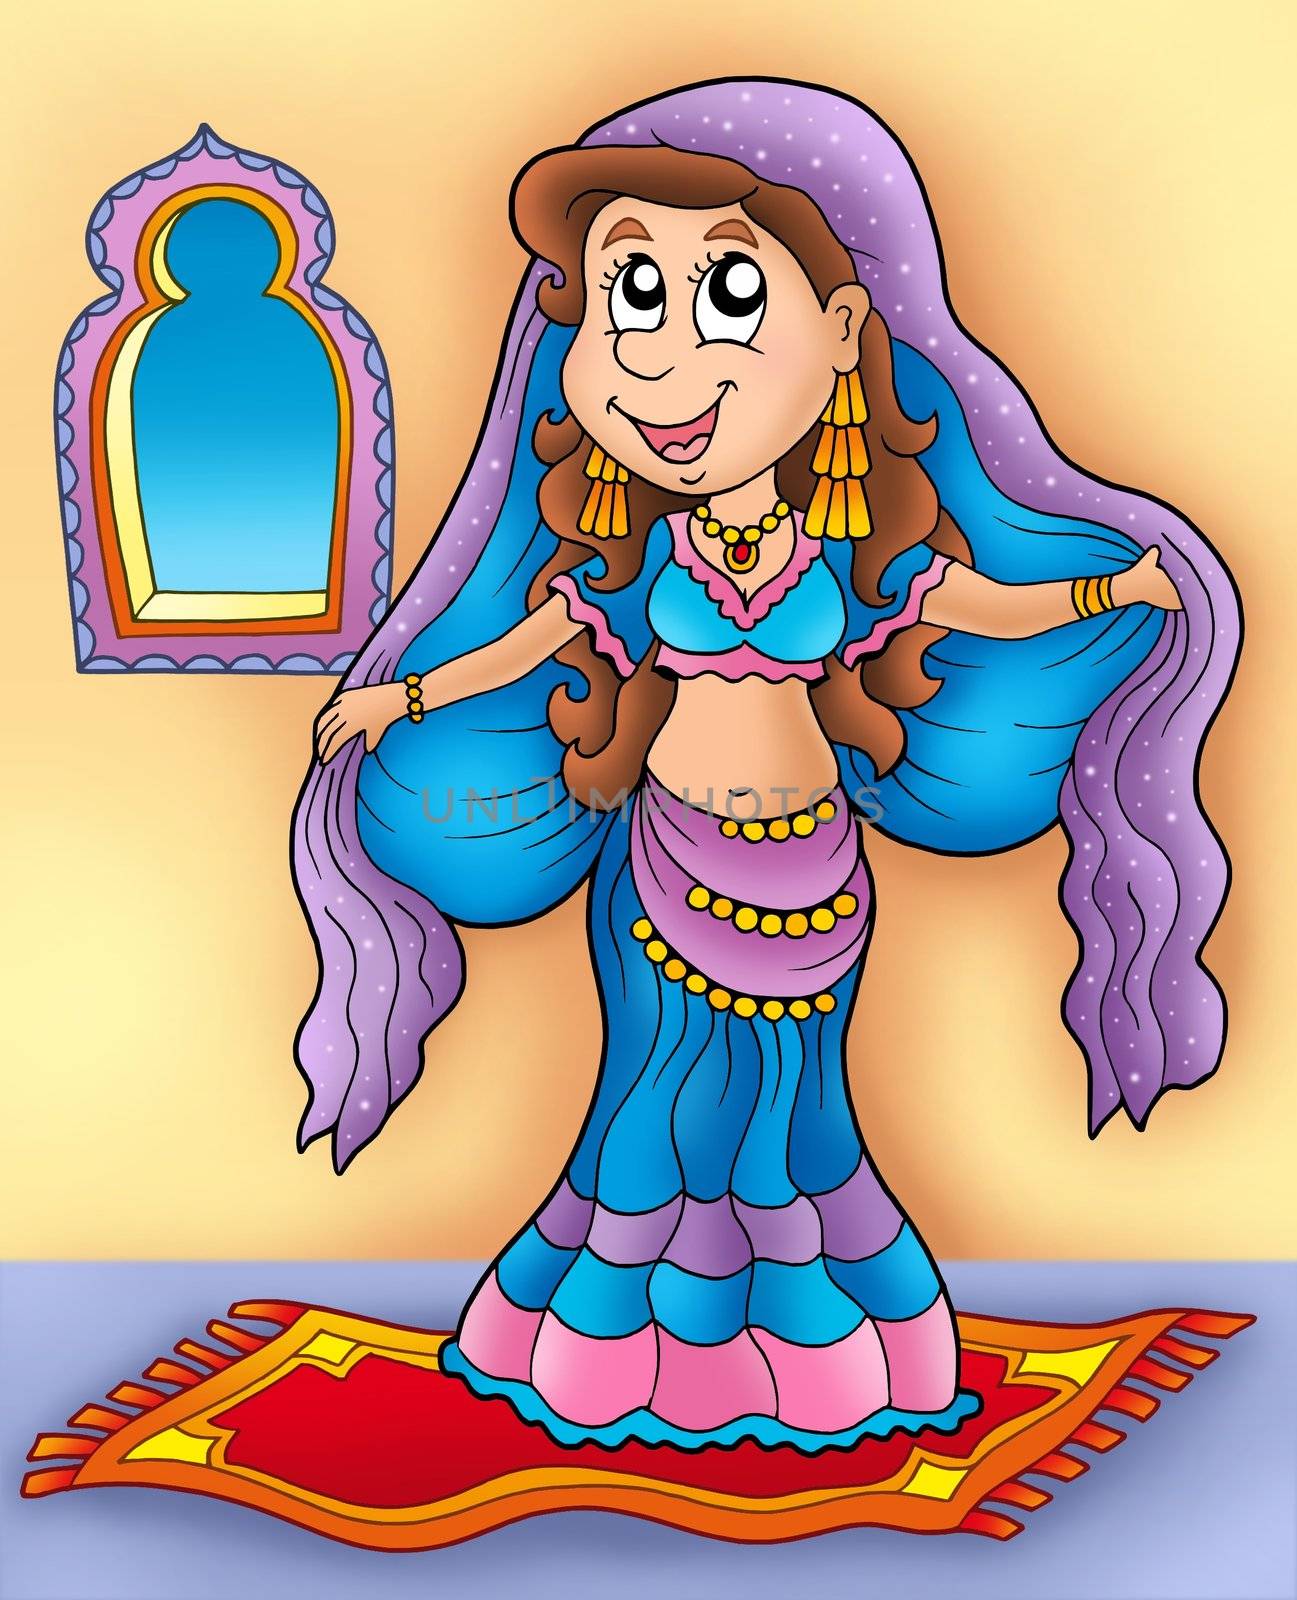 Belly dancer on carpet - color illustration.